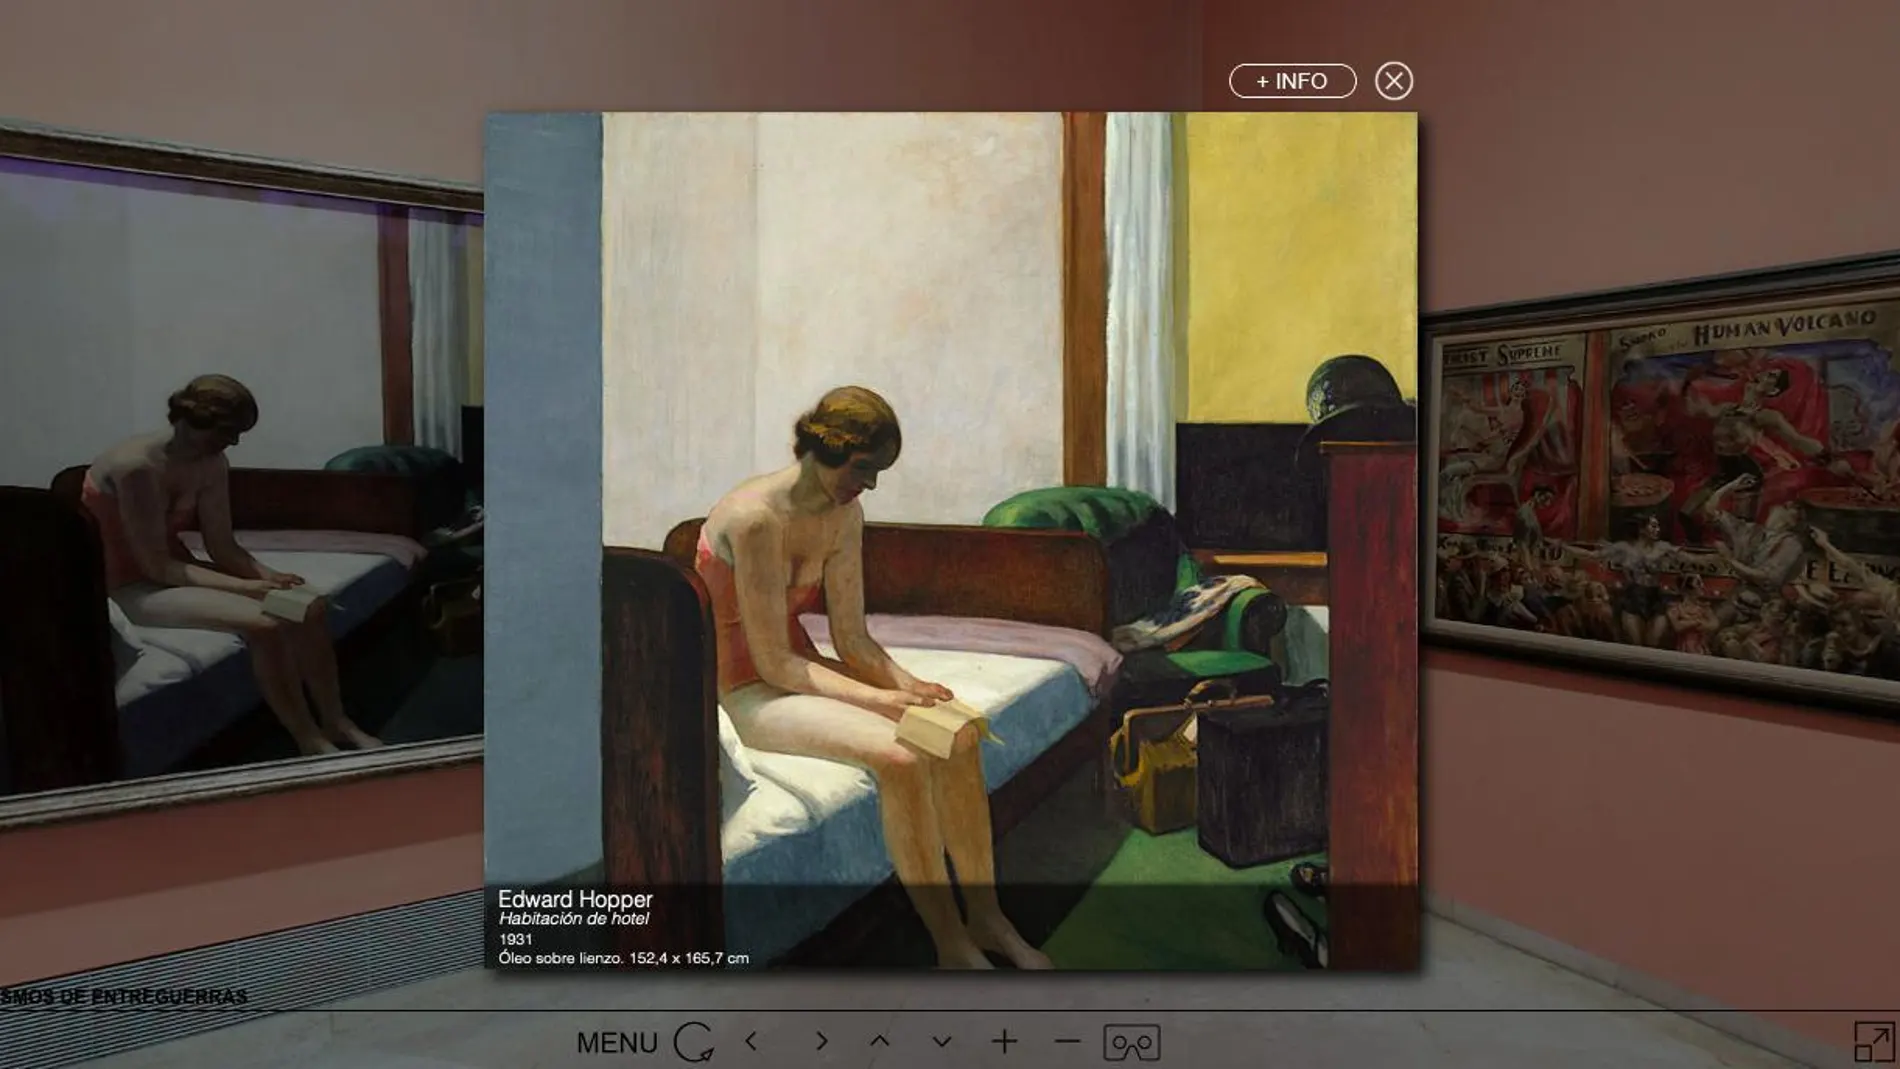 "Habitación de hotel", de Edward Hopper, visto desde la visita virtual del Museo Thyssen